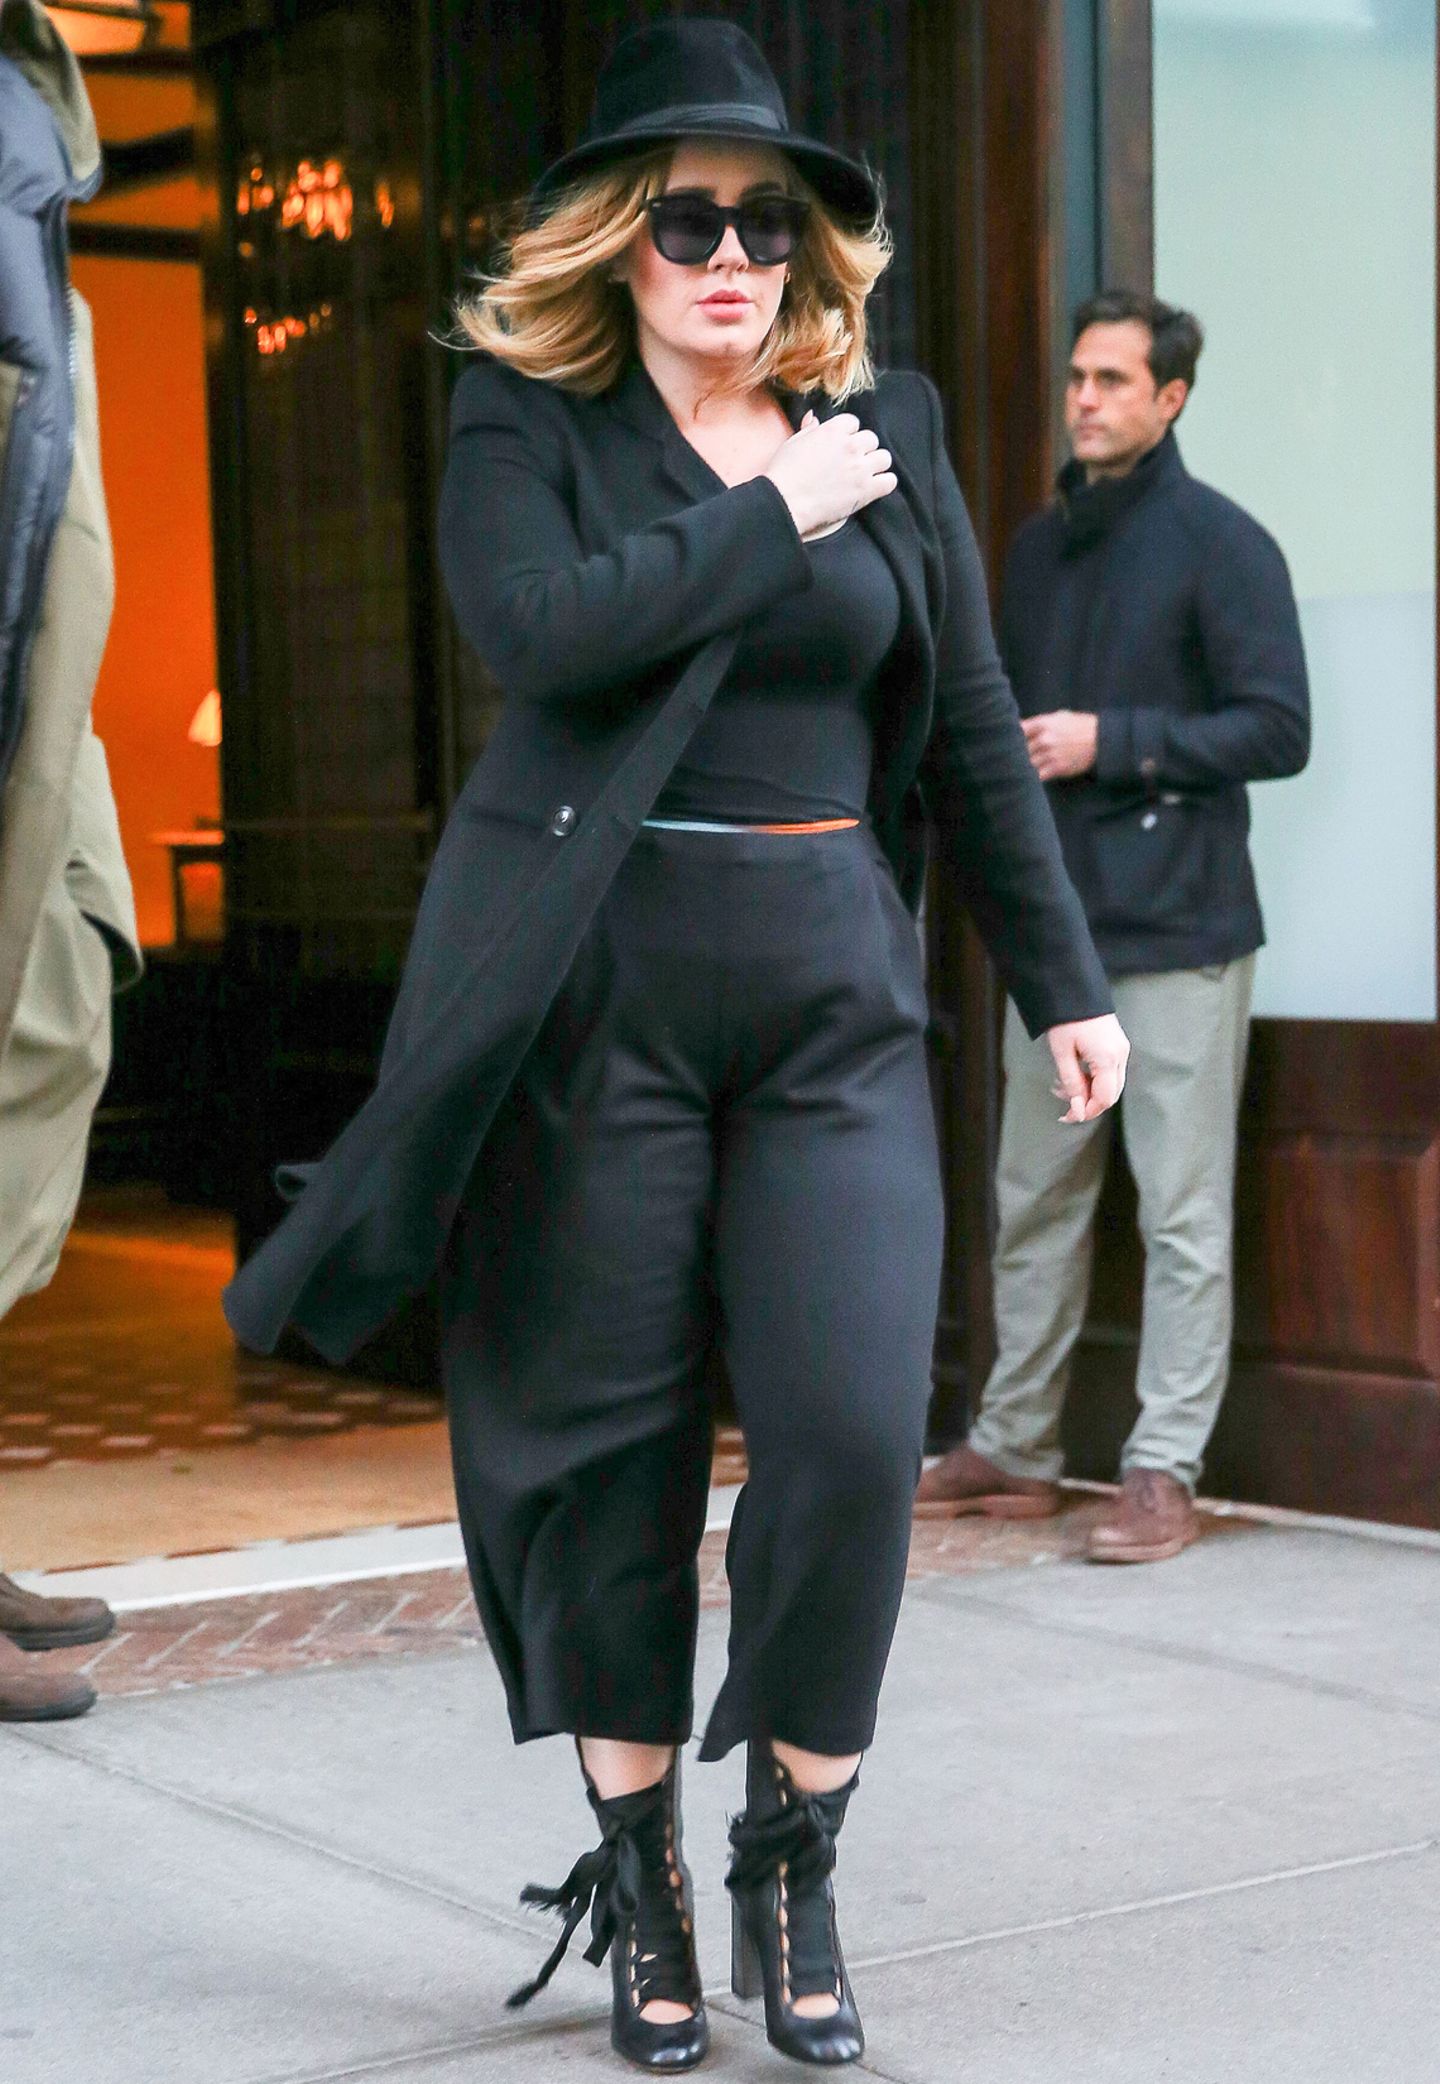 Schwarze Culottes, Stilettos mit Schnürung, taillierter, schwarzer Mantel, Sonnenbrille und Hut - Adele sieht aus wie ein echter Megastar.